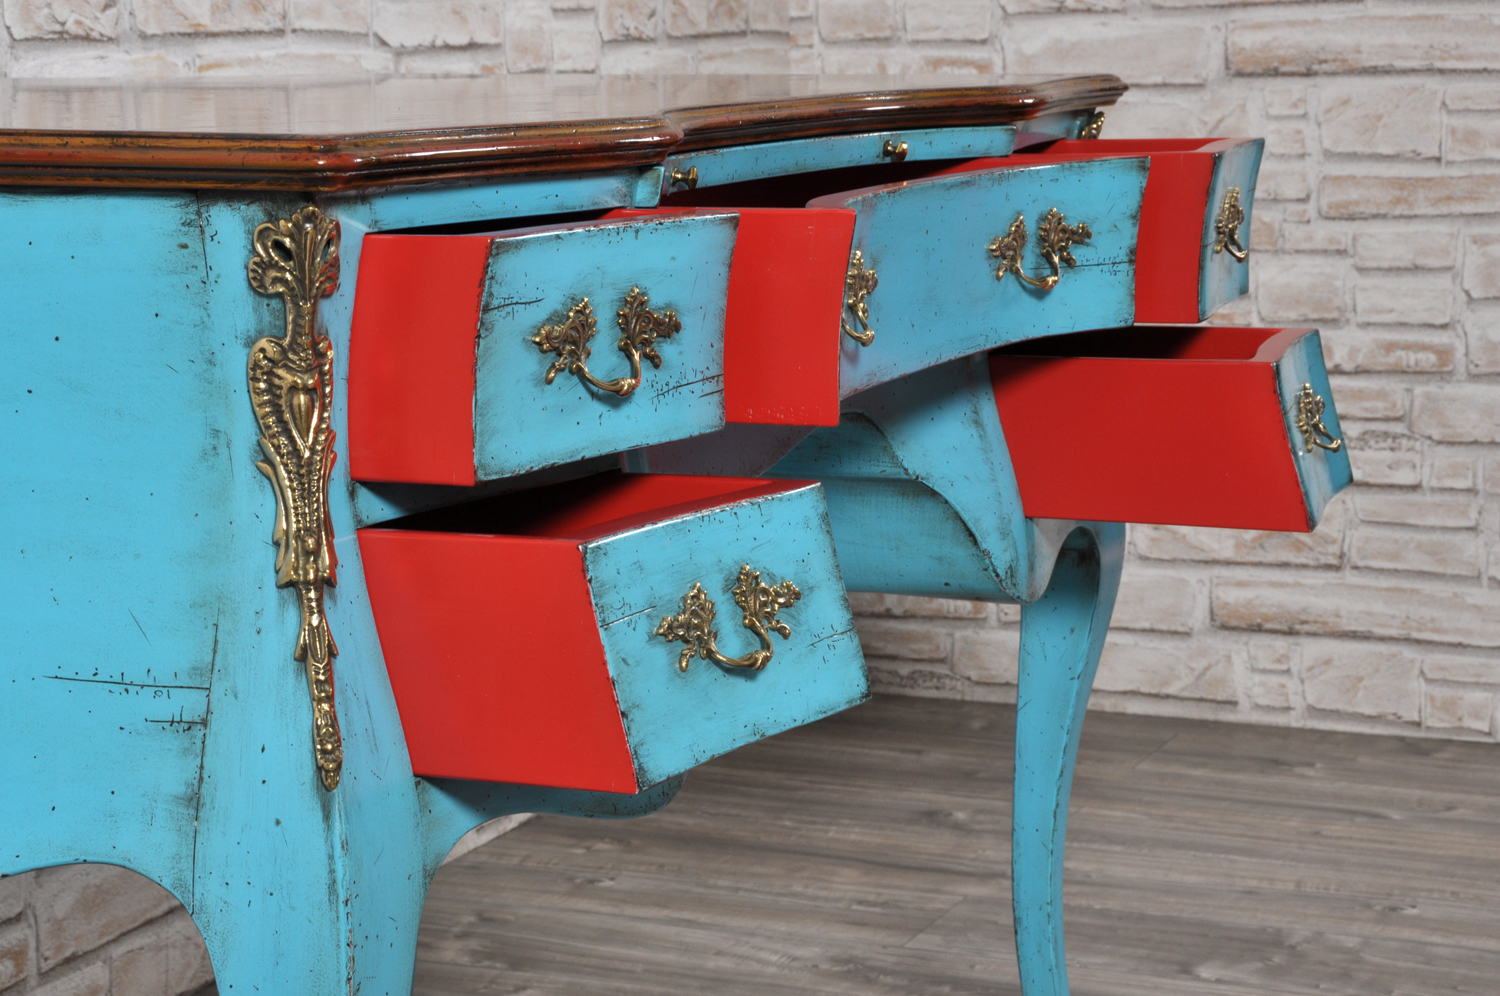 interni tonalità rossa dei cassetti scrivania realizzata con le stesse caratteristiche del mobile originale risalente alla prima metà del settecento veneziano costruita a mano